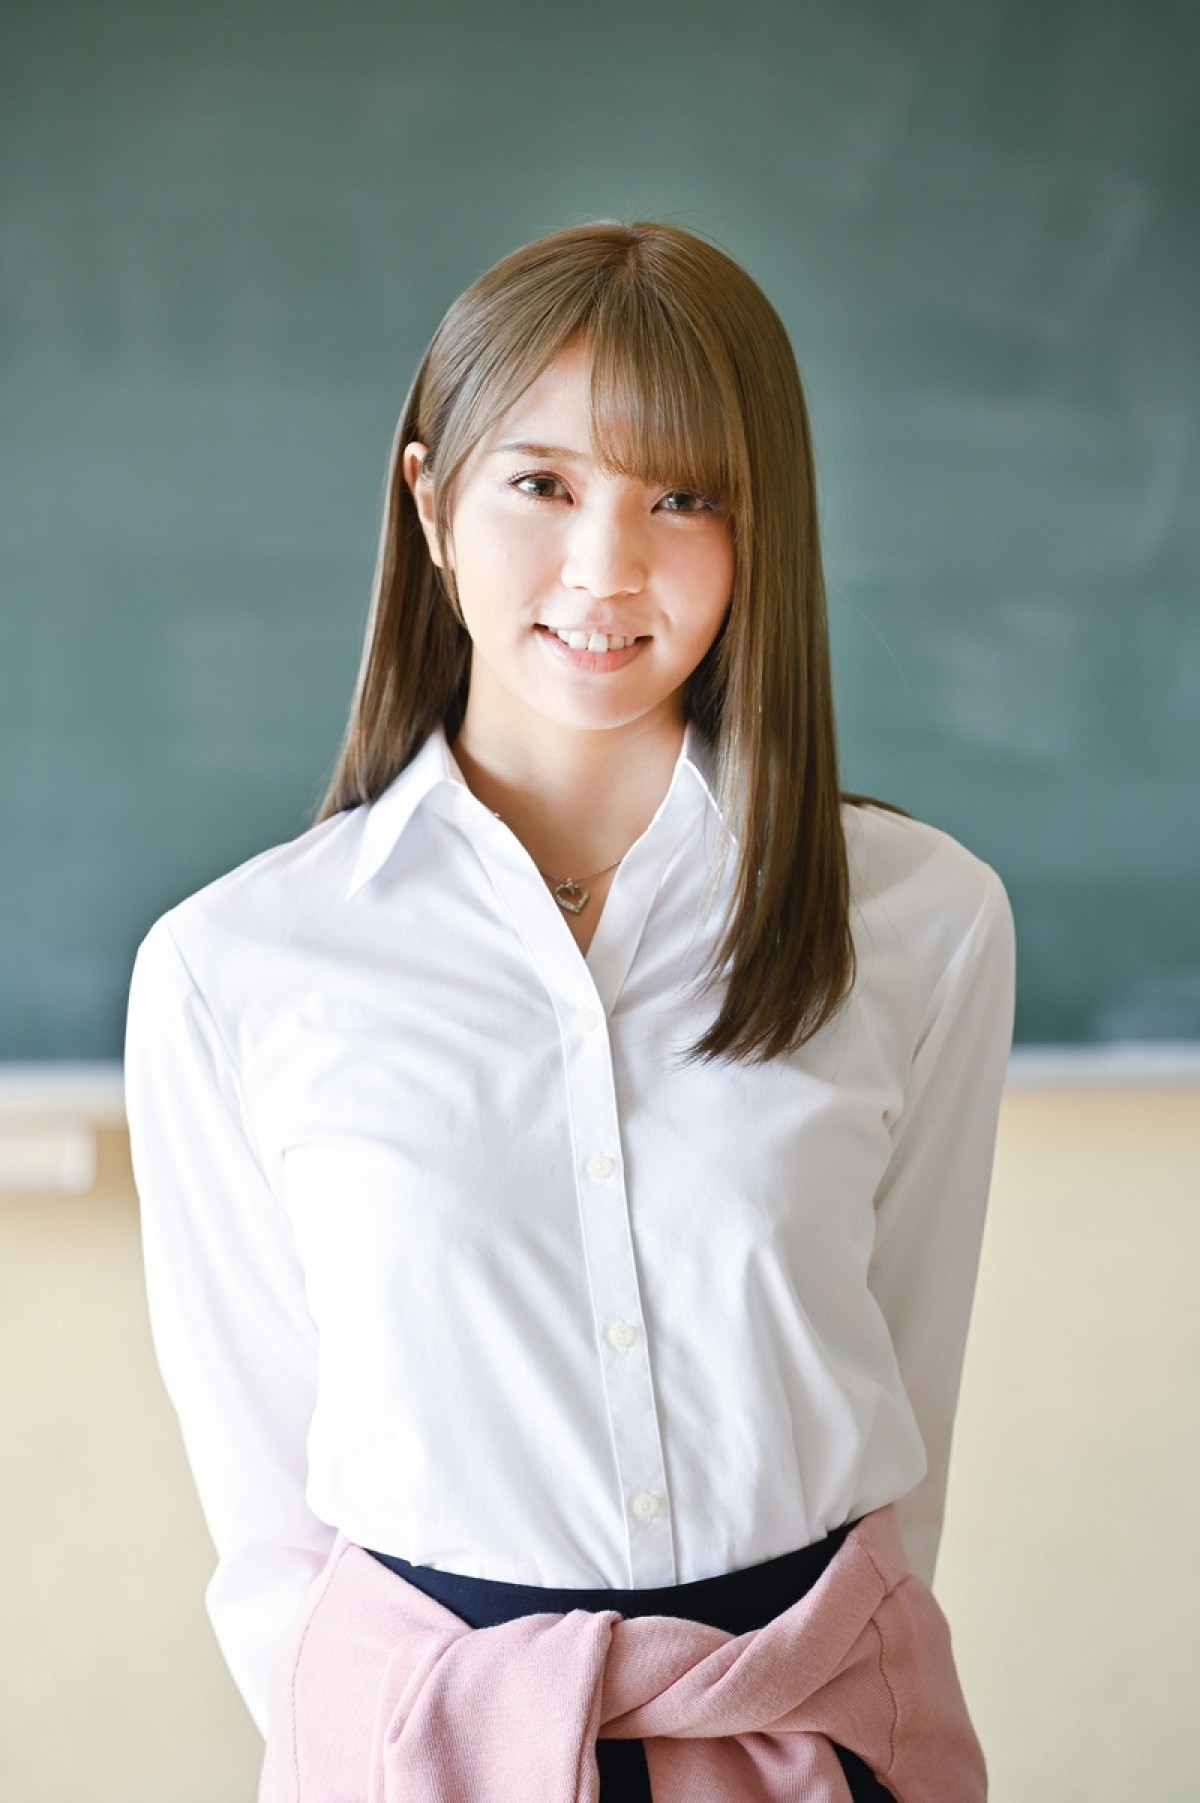 欅坂46・小林由依、金髪姿に反響「ゆいぽんかわいい」「似合ってる」